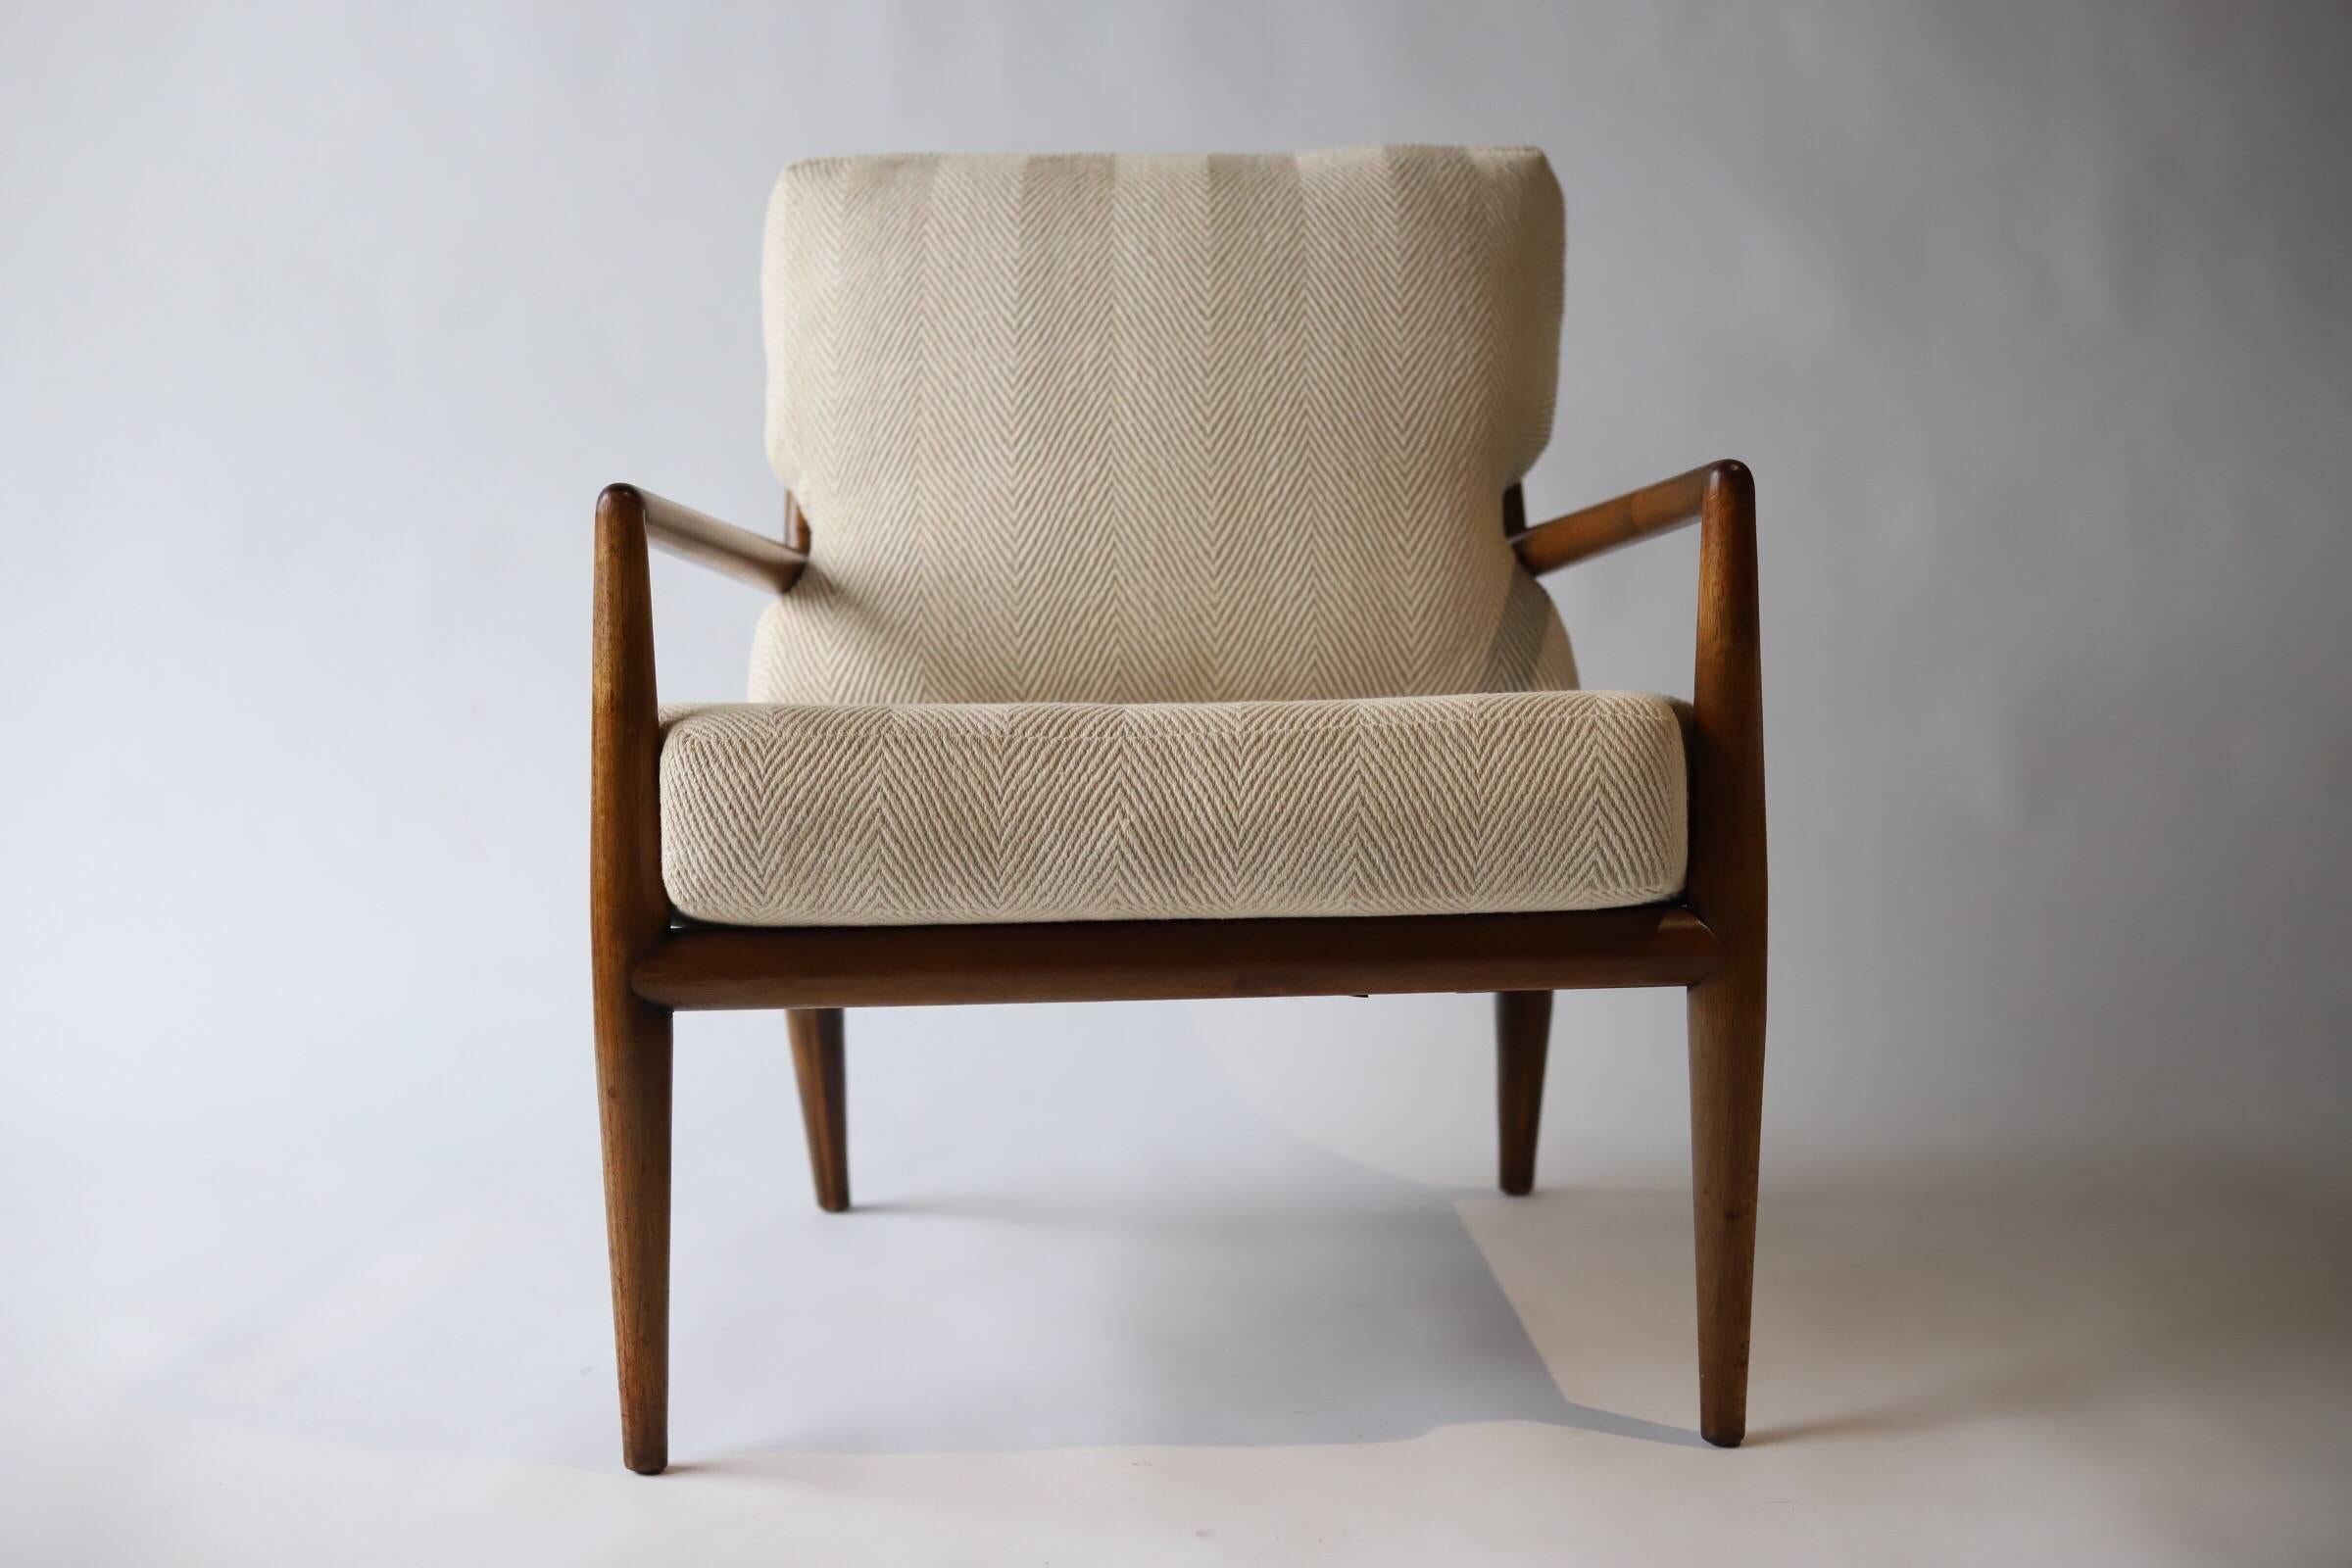 Wonderfully designed elegant lounge chair by T.H. Robsjohn-Gibbings for Widdicomb.
 